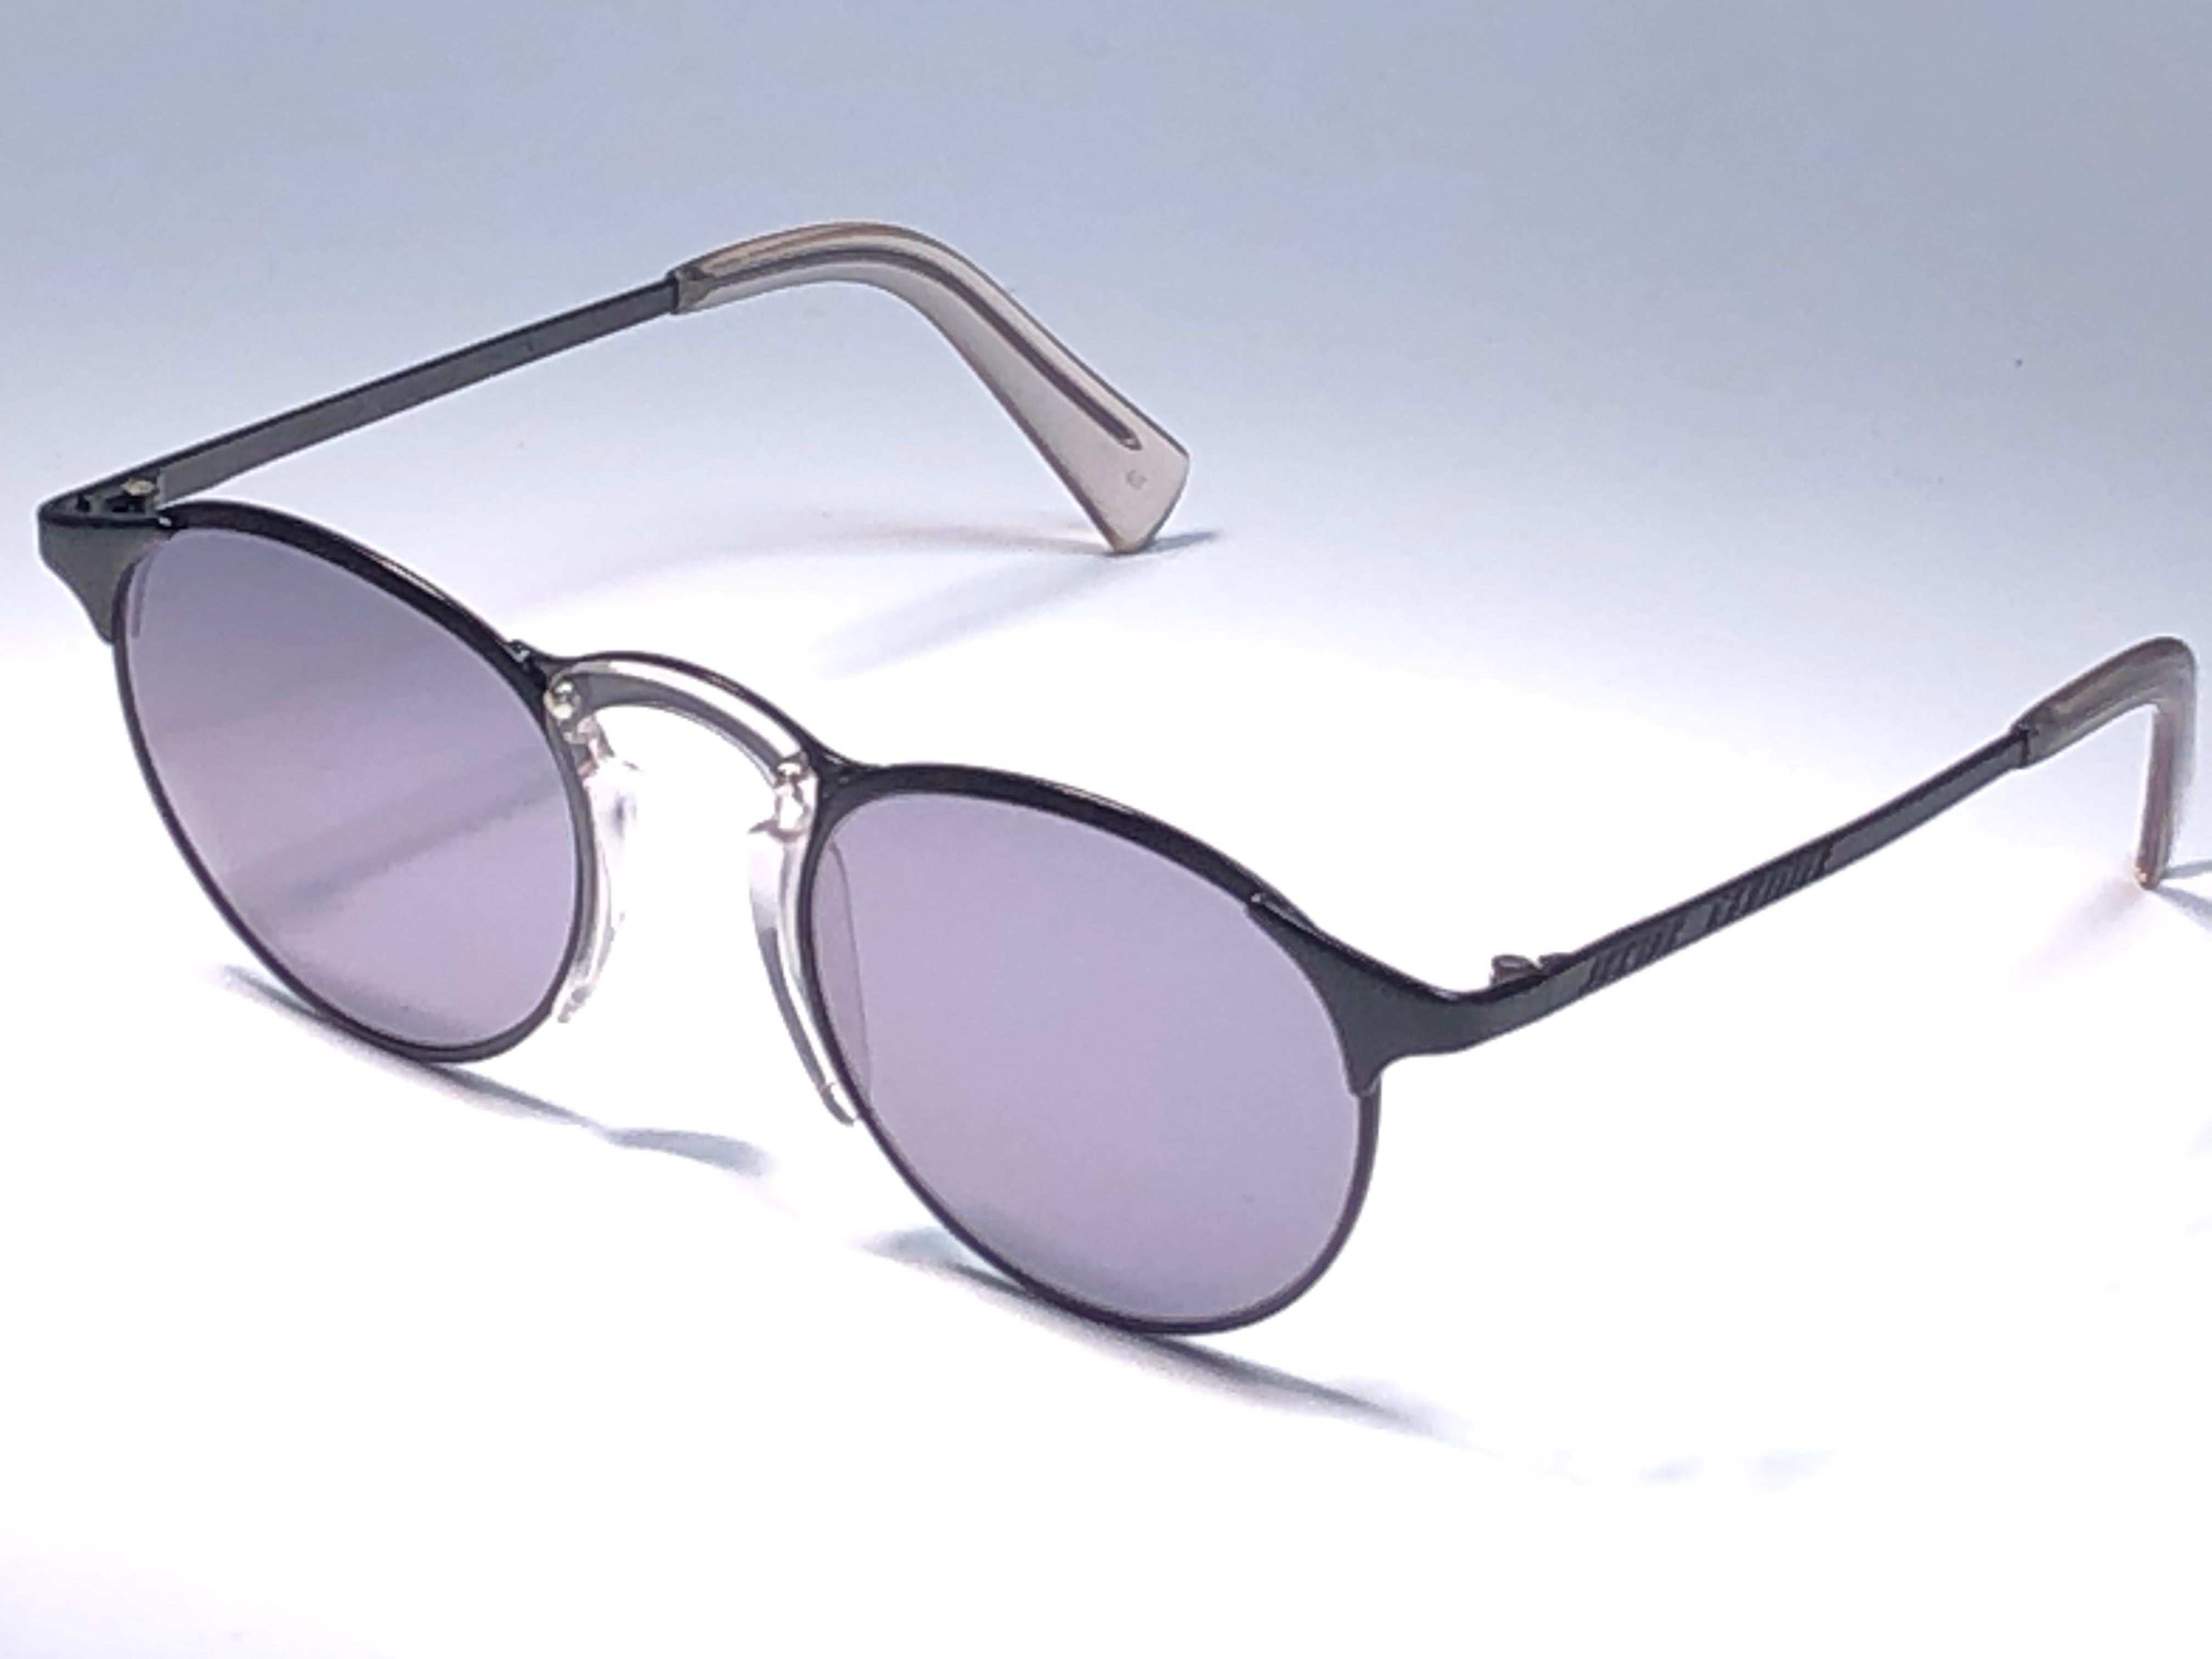 &New Jean Paul Gaultier Sonnenbrille mit schwarzem Rahmen.
Makellose, rauchgraue Gläser, die einen tragbaren JPG-Look vervollständigen.

Erstaunliches Design mit starken, aber raffinierten Details.
Design und Herstellung in den 1990er Jahren.
Neu,